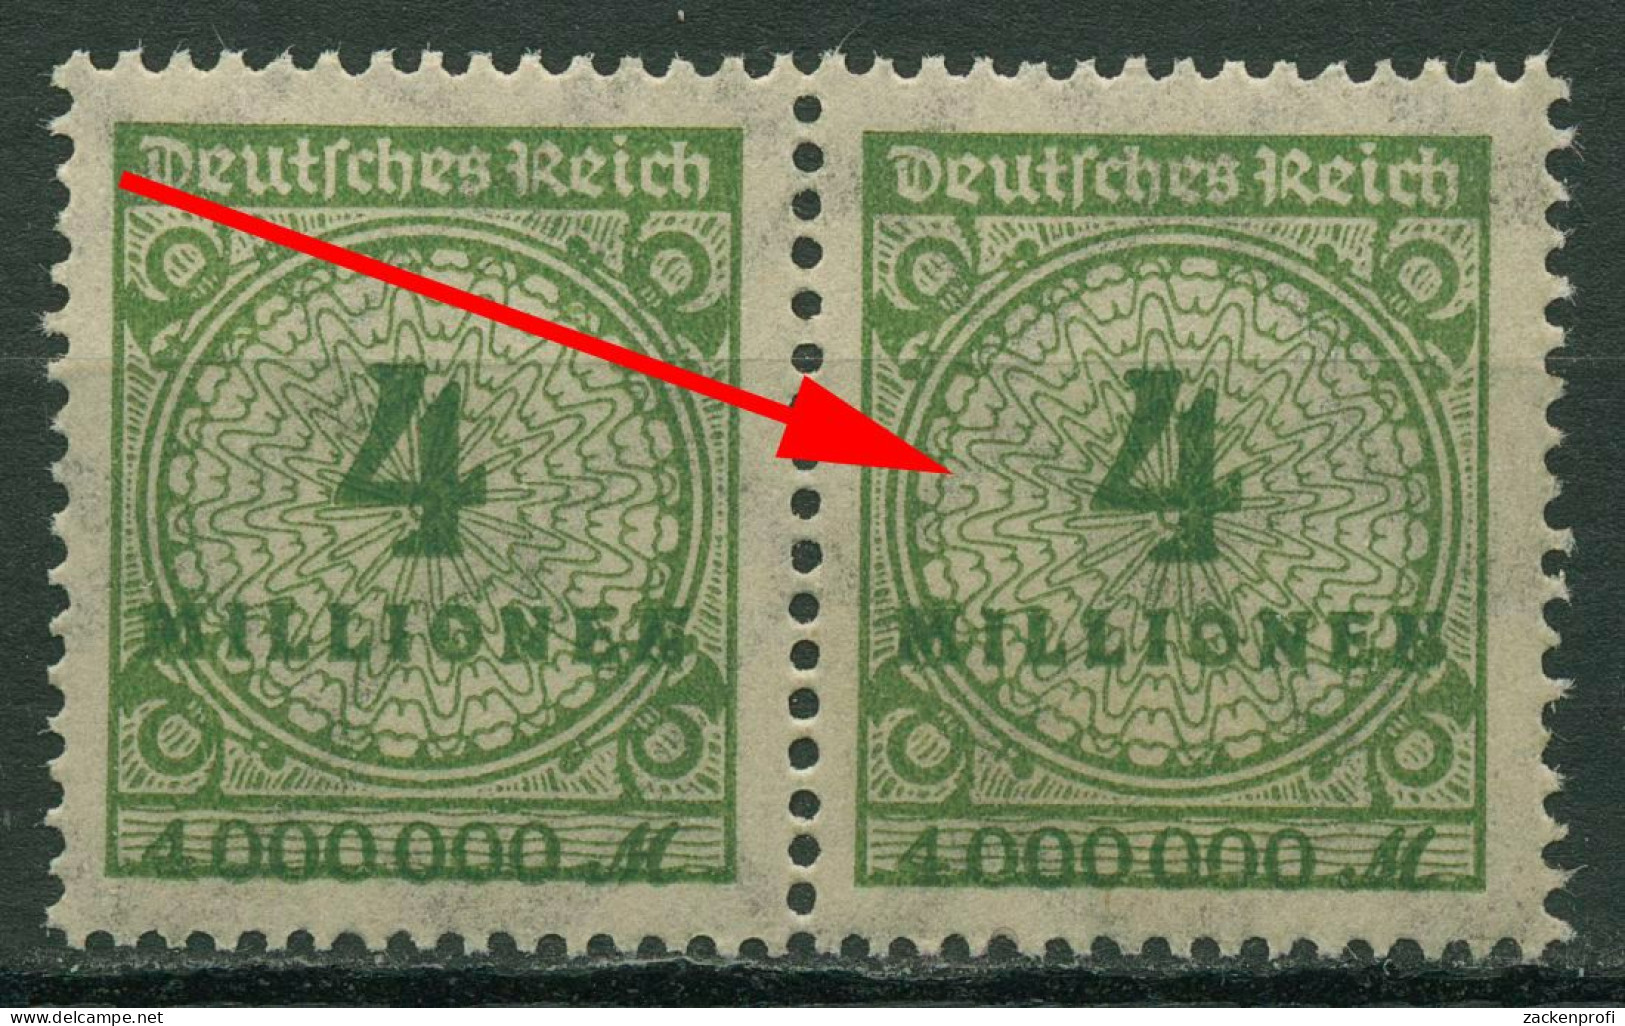 Deutsches Reich 1923 Mit Plattenfehler Sprung In Rosette 316 A P HT Postfrisch - Varietà & Curiosità